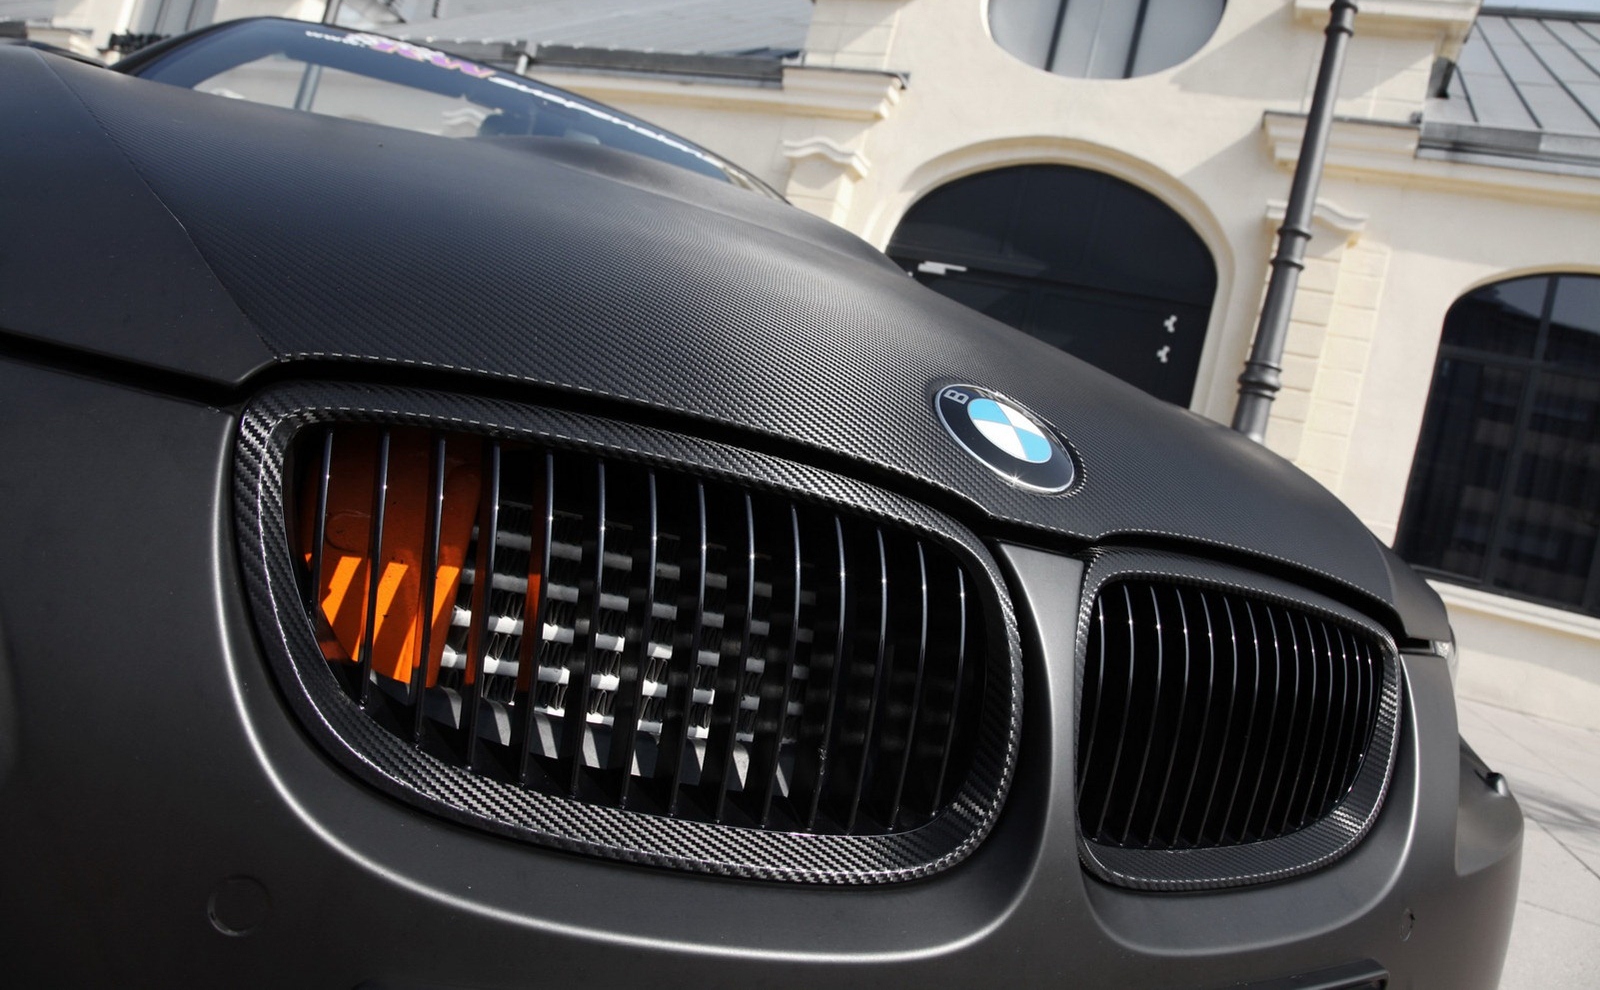 BMW M3 Cabrio ATT Tec